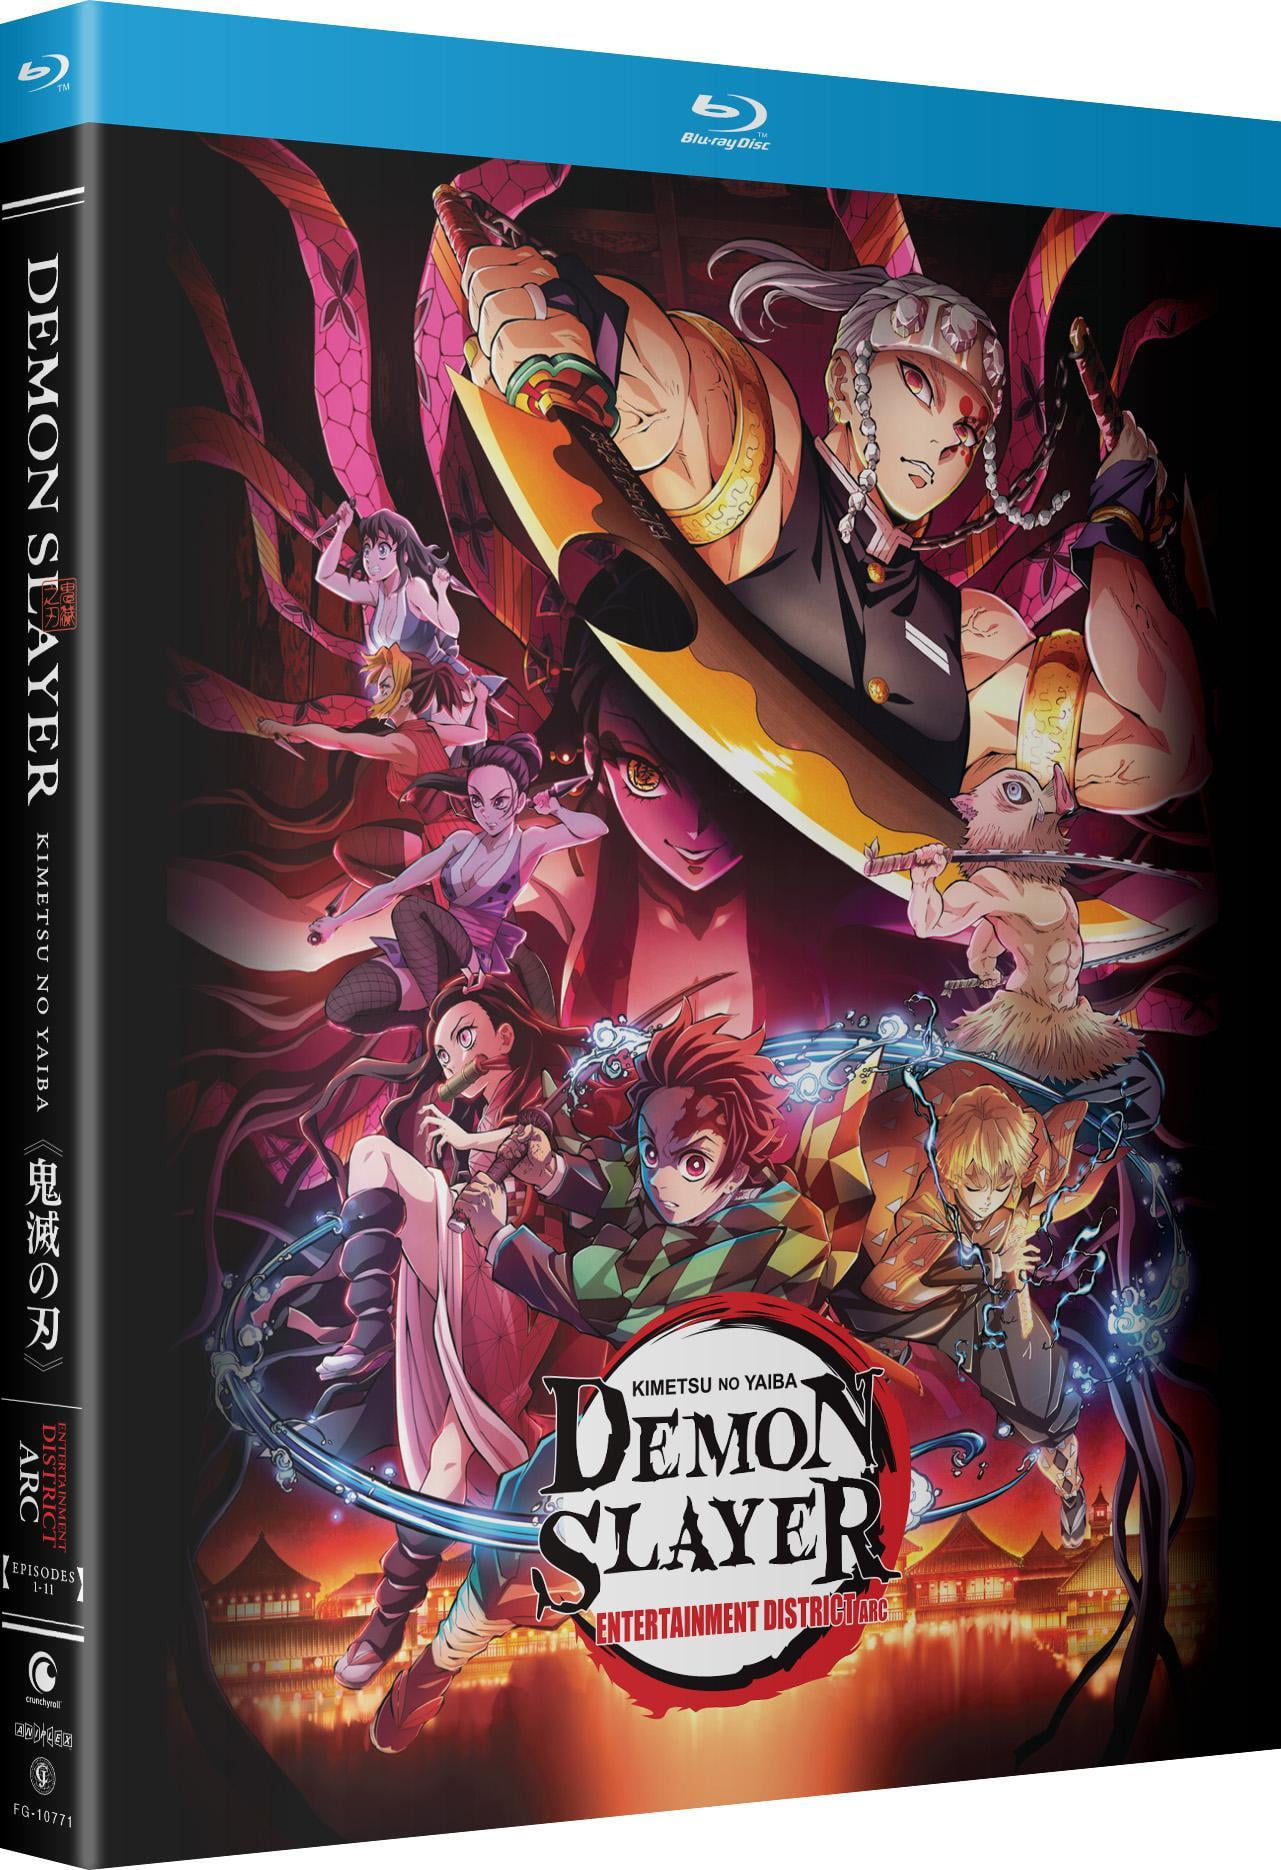 Demon Slayer Kimetsu No Yaiba The Movie: Mugen Train Anime DVD